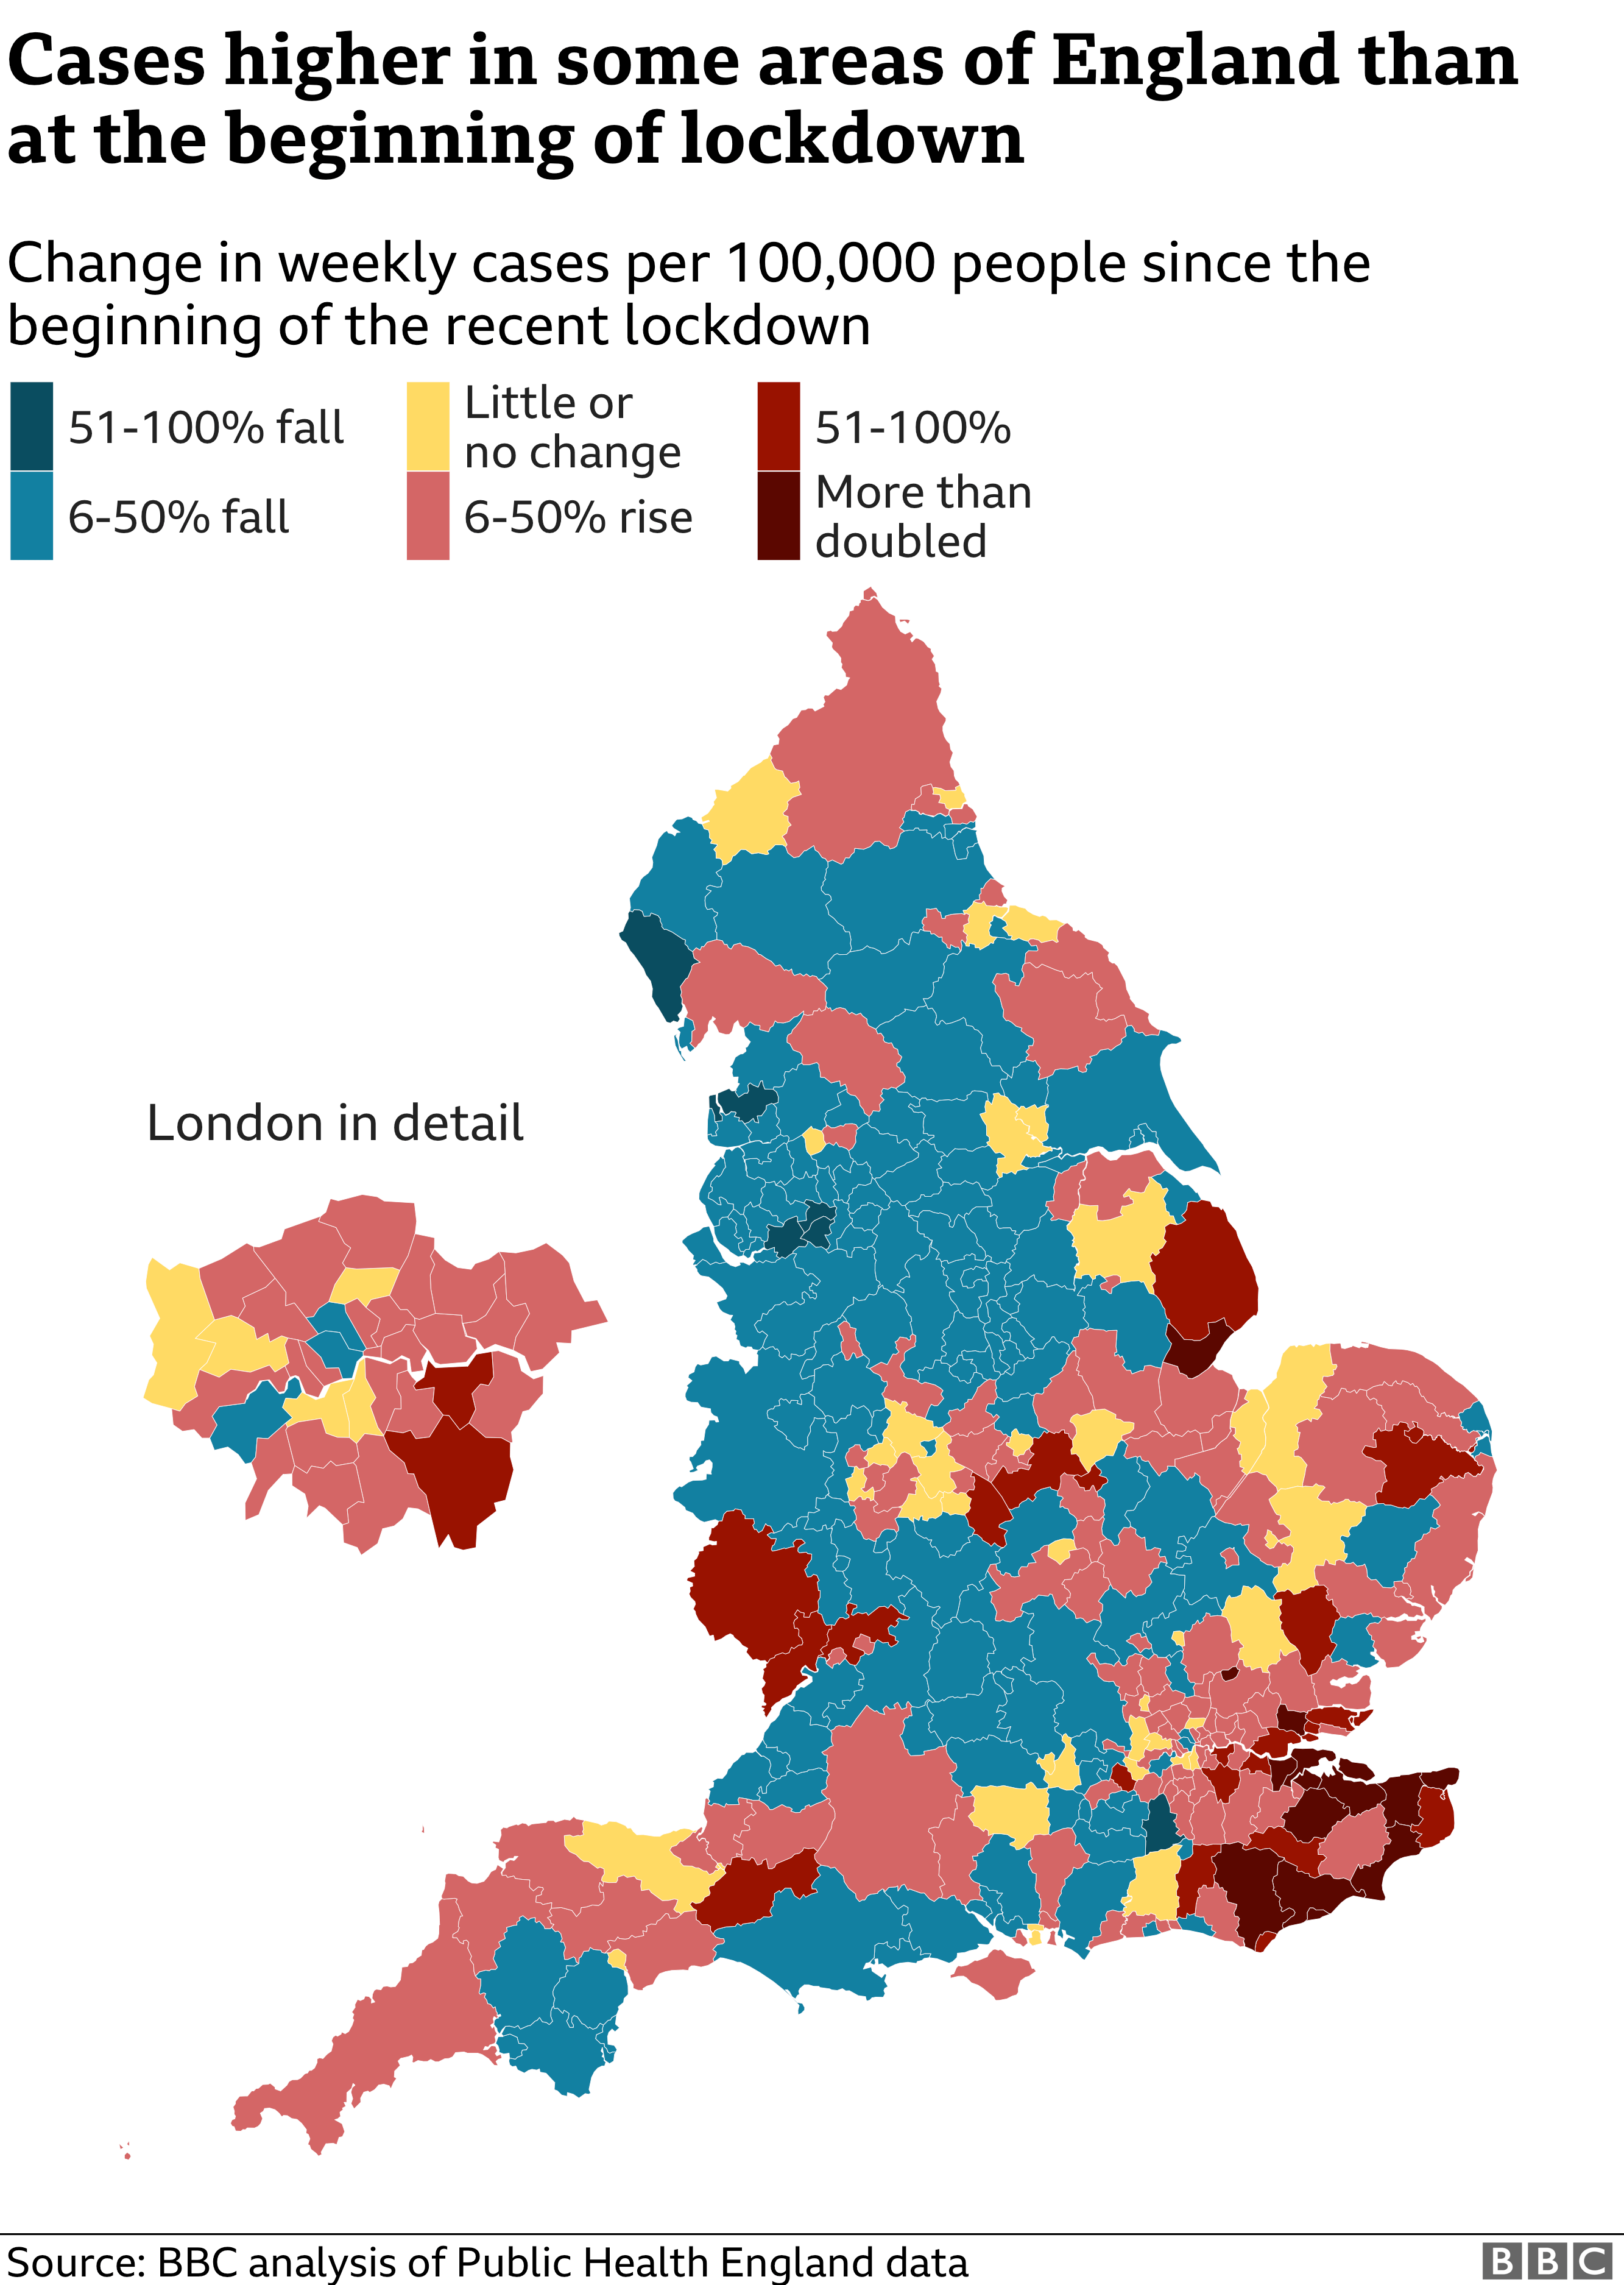 Как изменились случаи заболевания в некоторых районах Англии после начала изоляции?